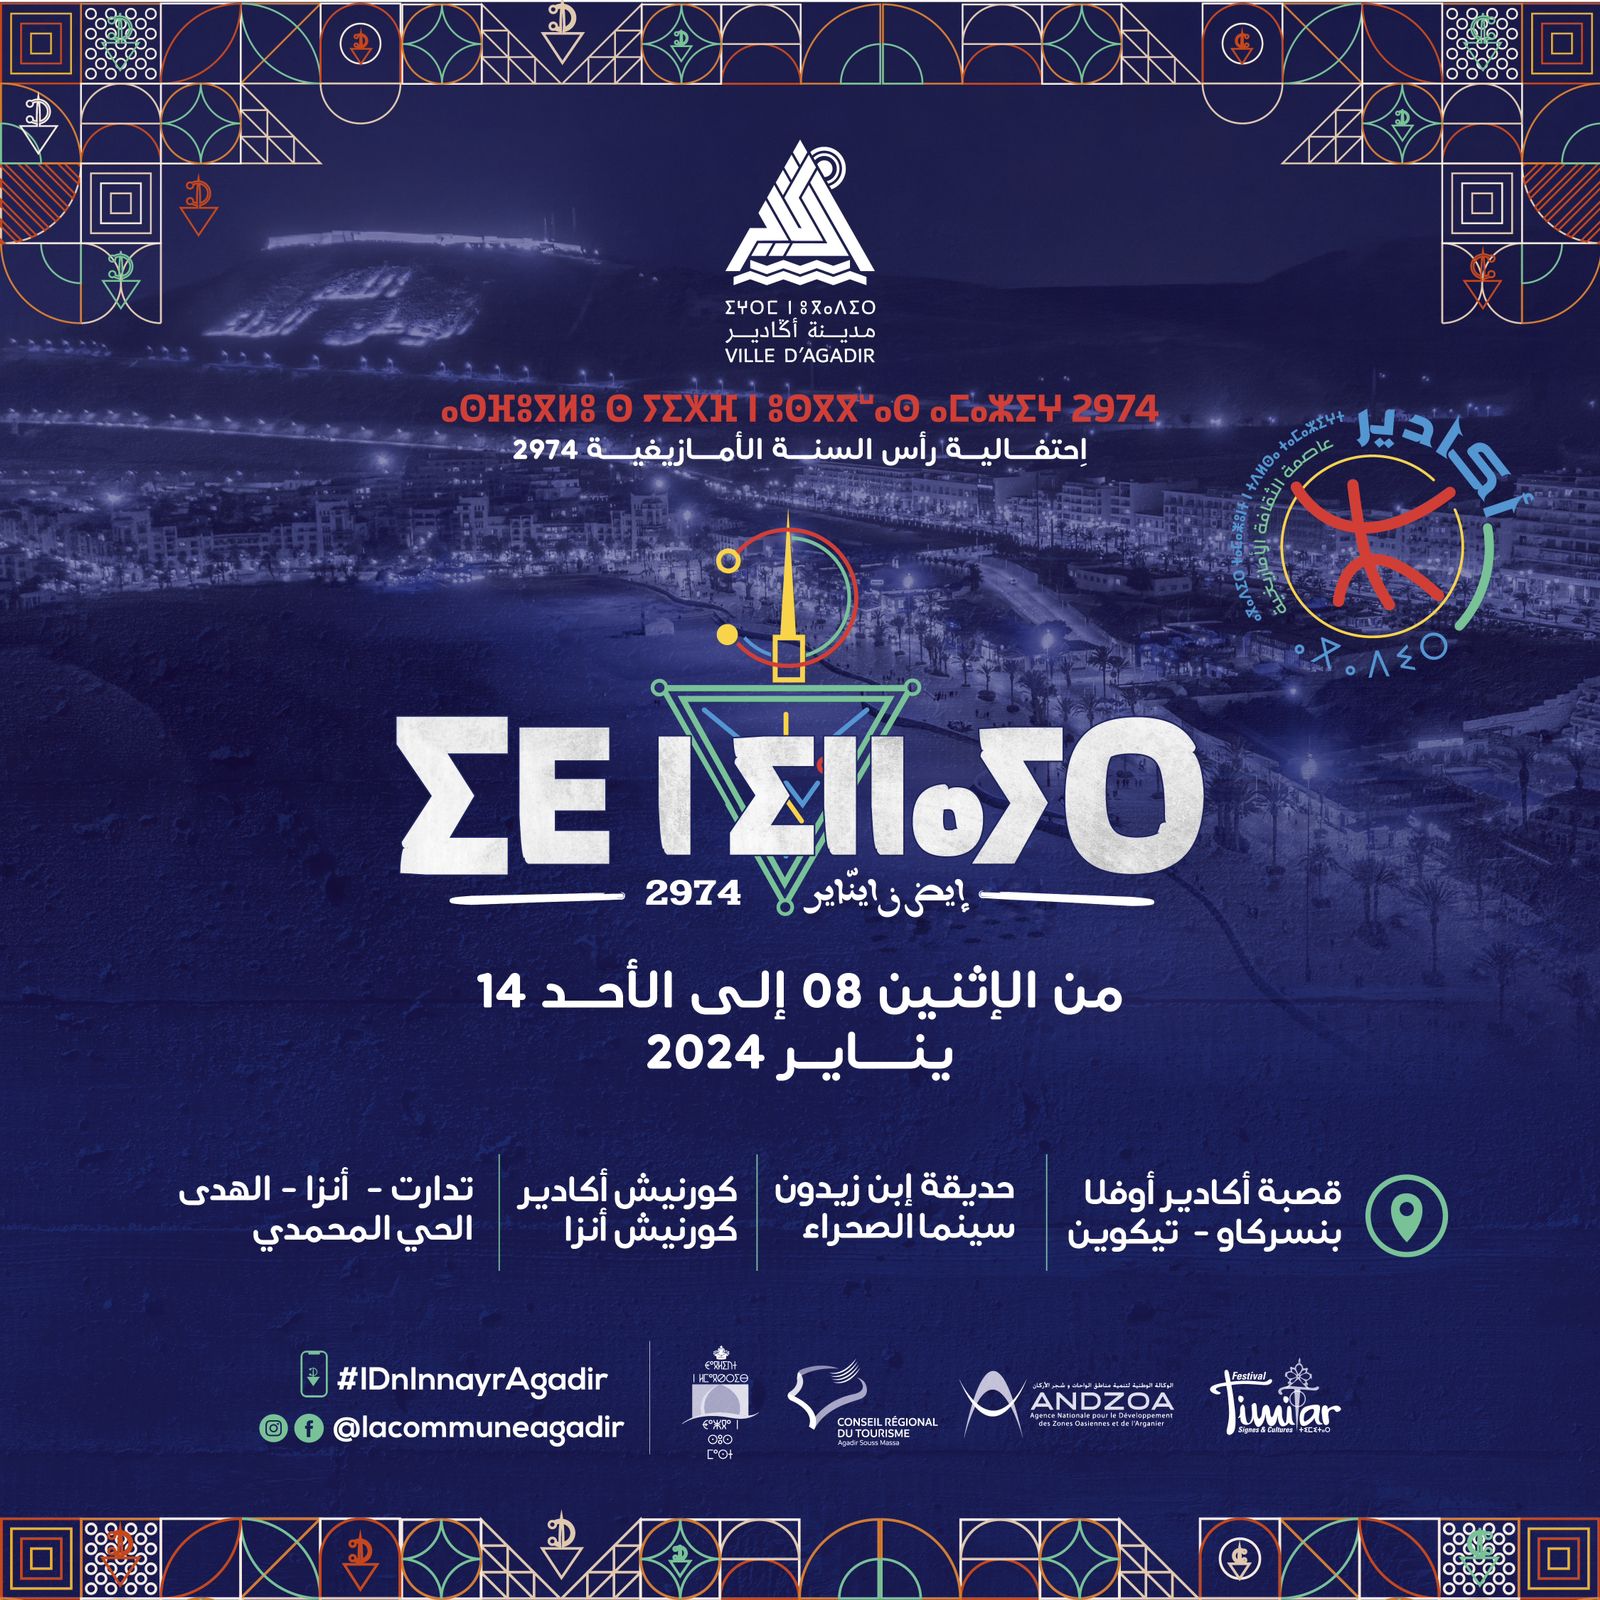 احتفالية رأس السنة الأمازيغية 2974